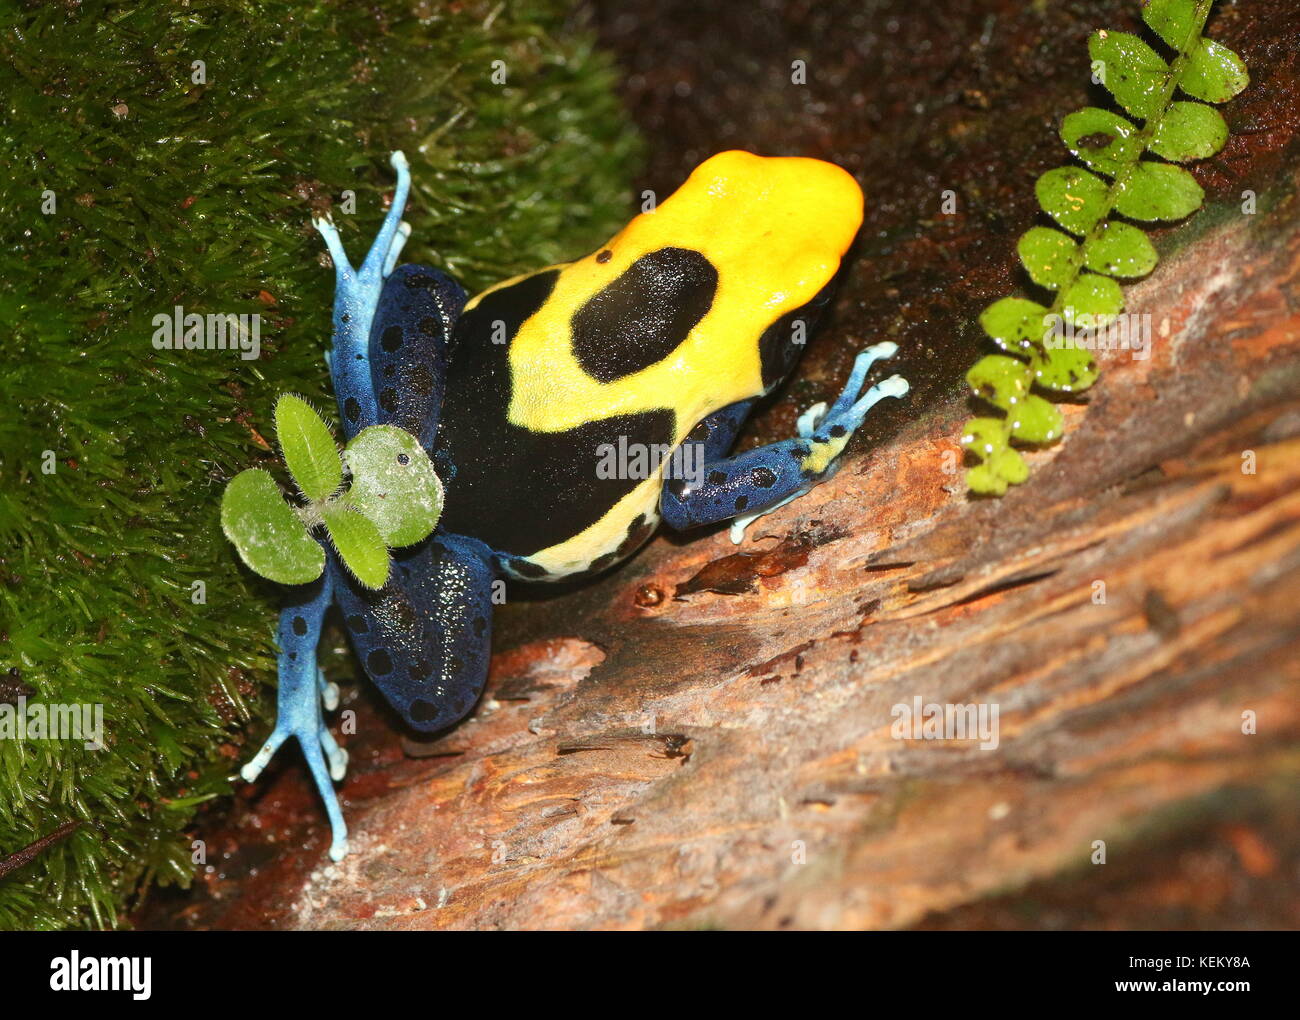 South American Dyeing poison dart frog or Tinc poison frog (Dendrobates tinctorius, Rana tinctoria), native to Guyana, Suriname, Brazil, French Guiana Stock Photo